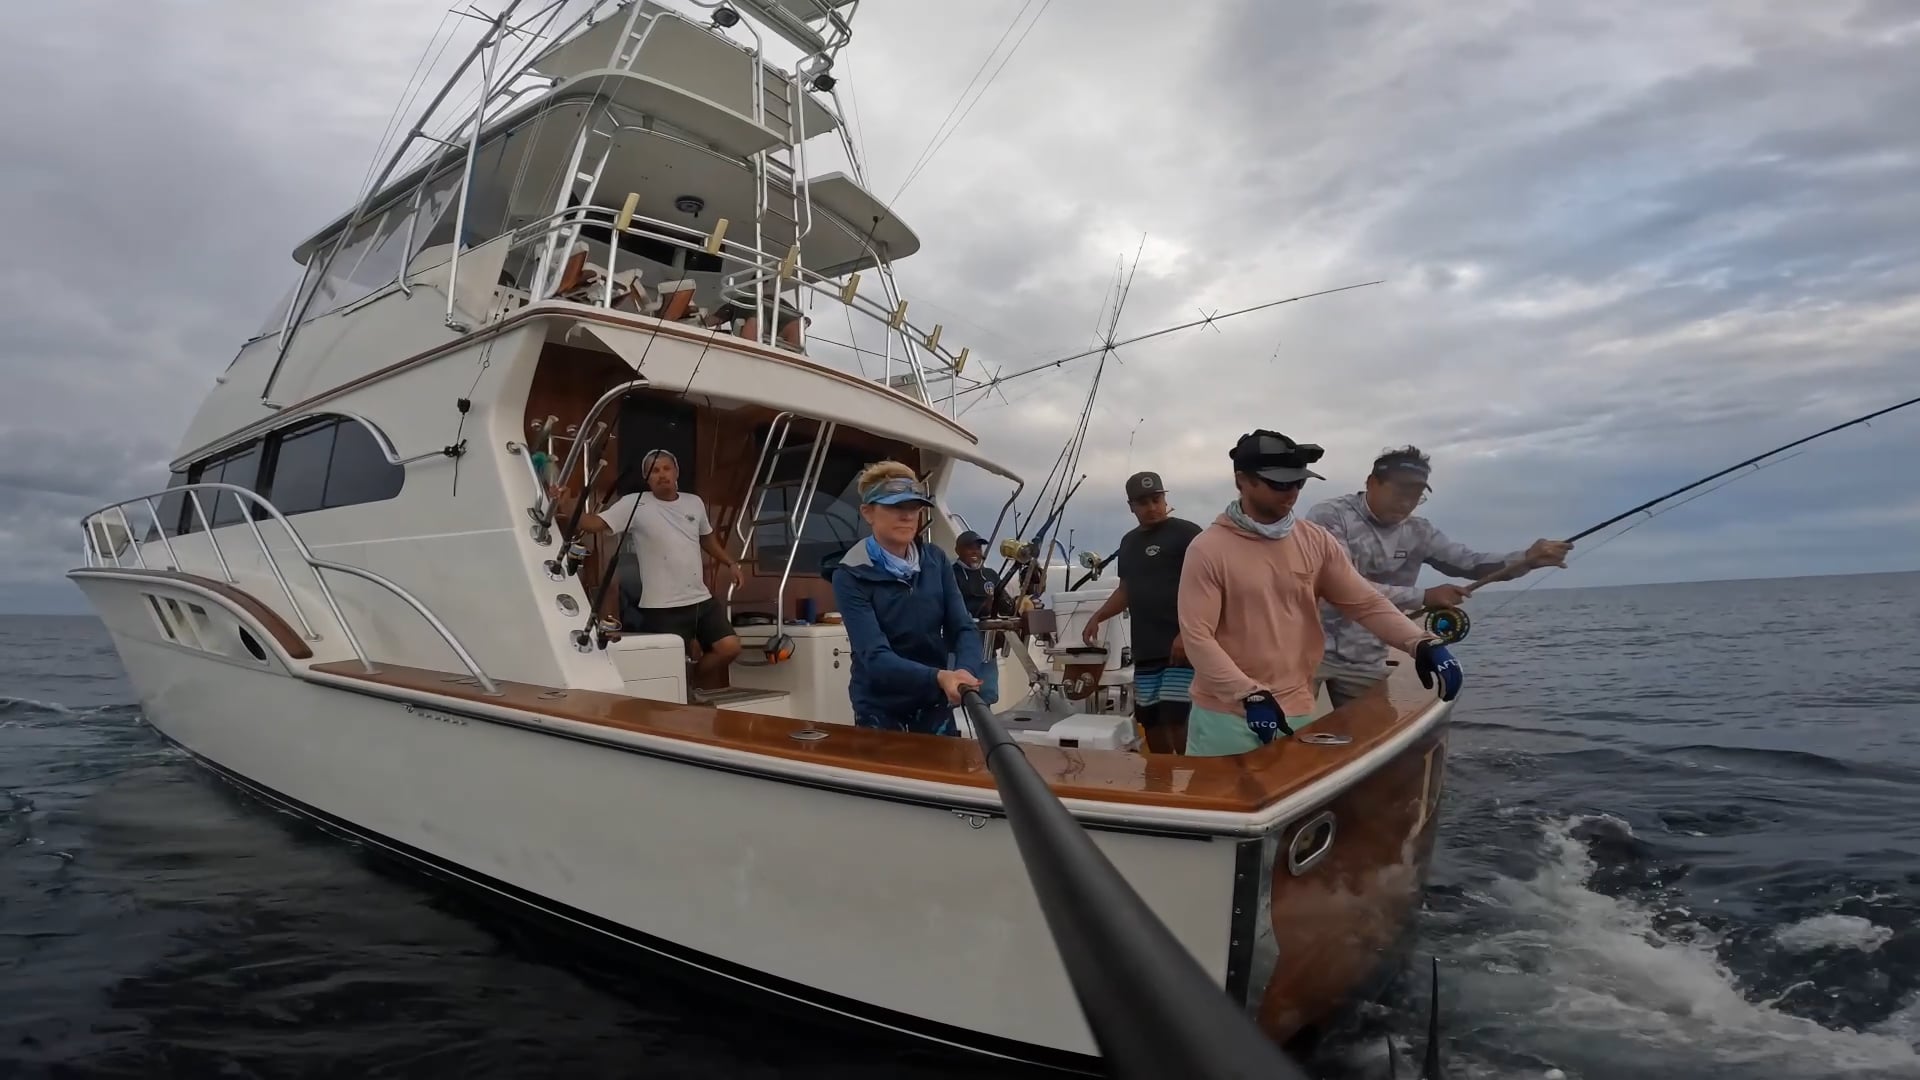 Fin'iky Fishing Charters in Beaufort, South Carolina